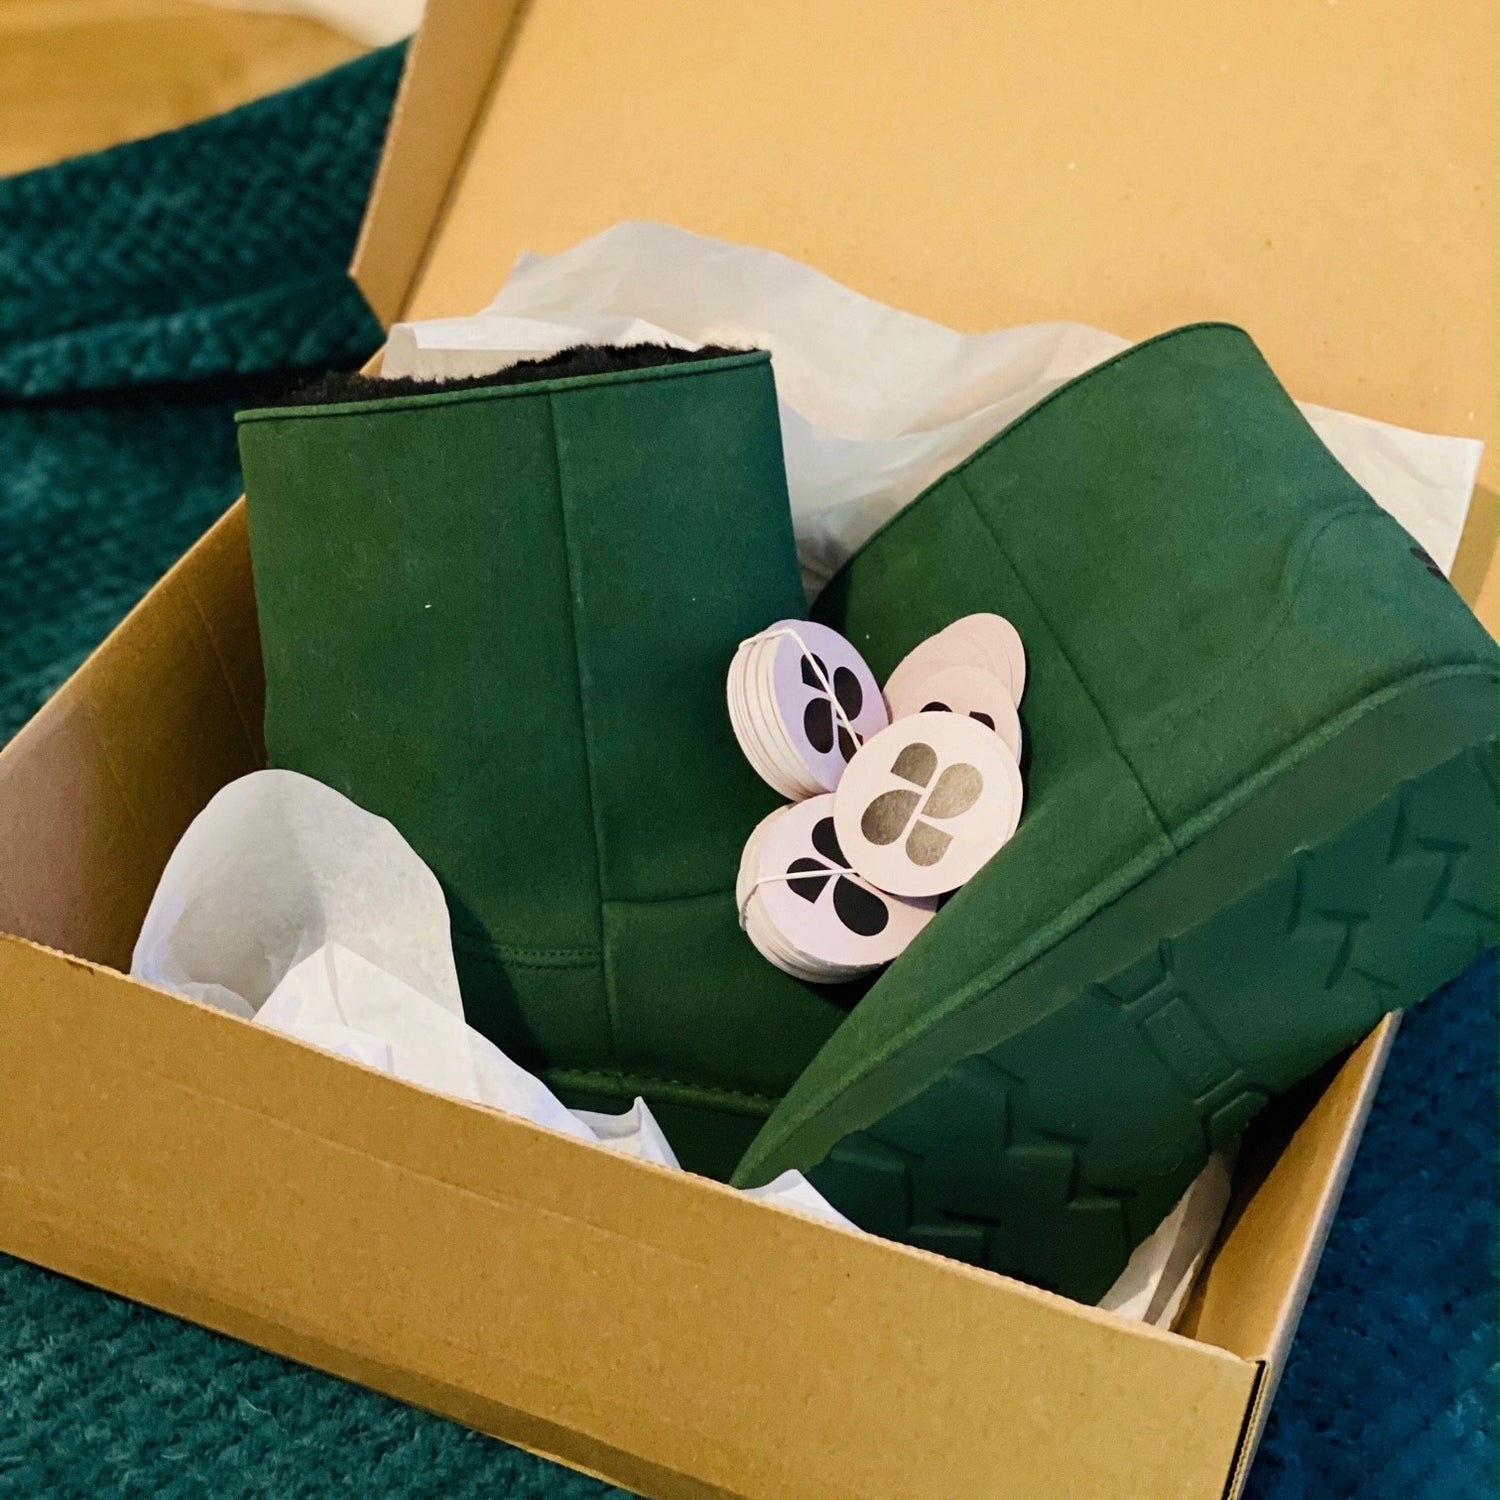 New Orchard Schweizer Schuhwerk aus handgenähtem veganem Leder, bestehend aus veganen Materialien und Bestandteilen, die ohne Tierquälerei auskommen. Vegan shoes